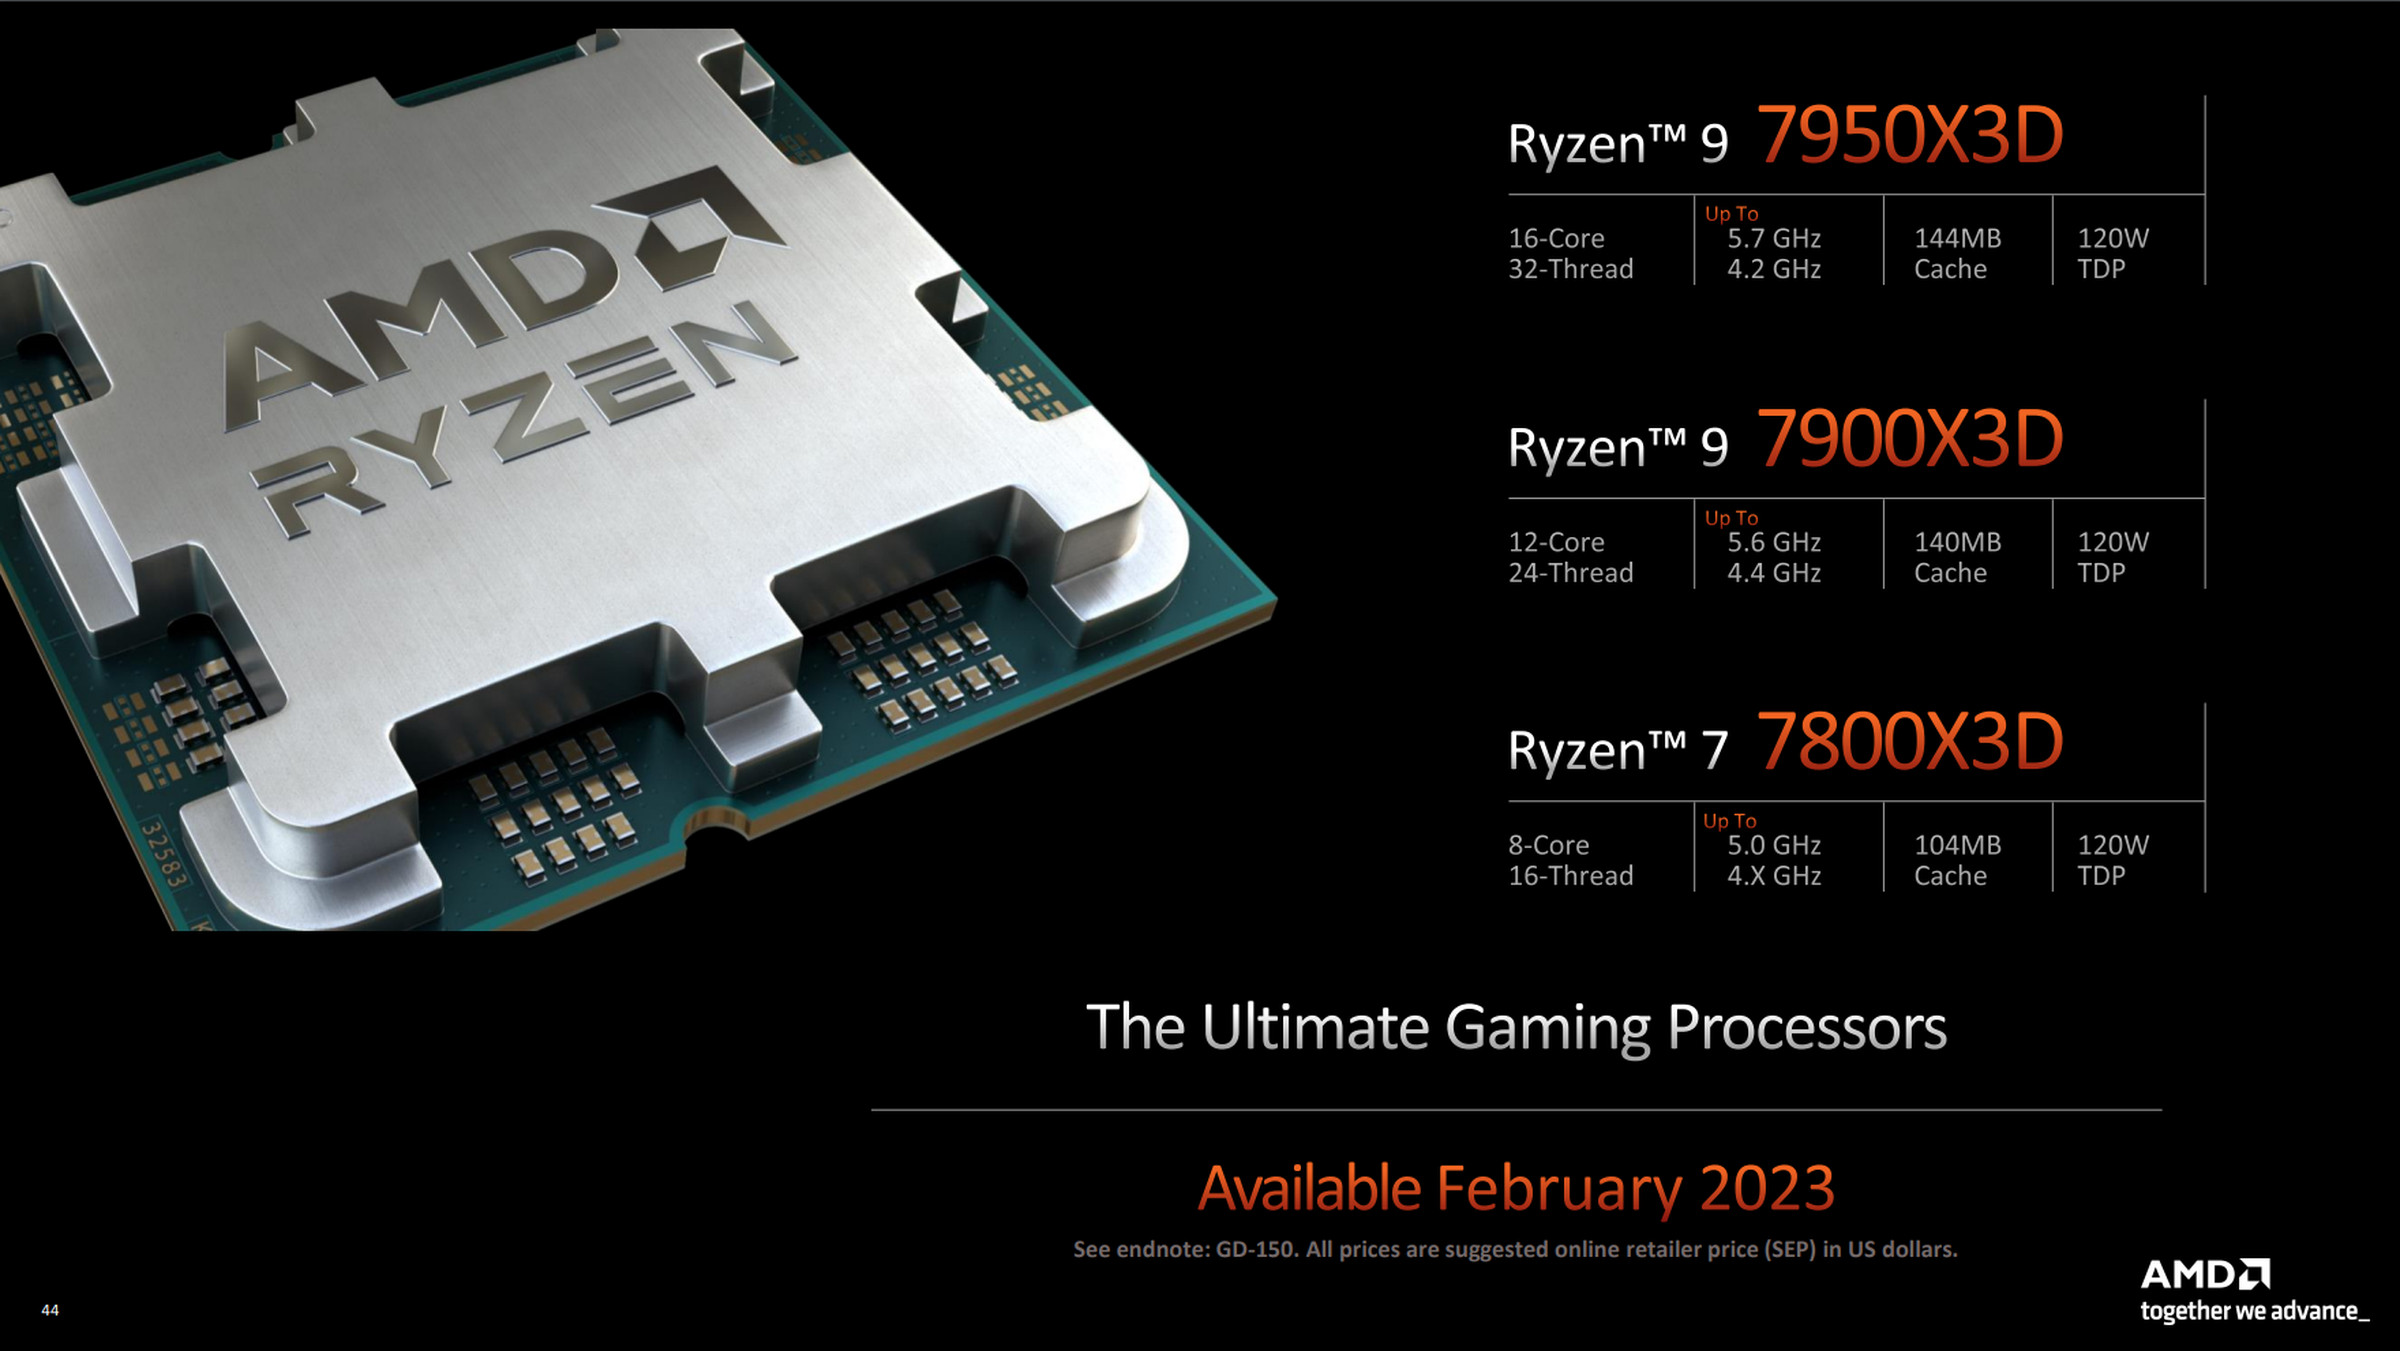 AMD's Ryzen 7000 3D series for 2023.